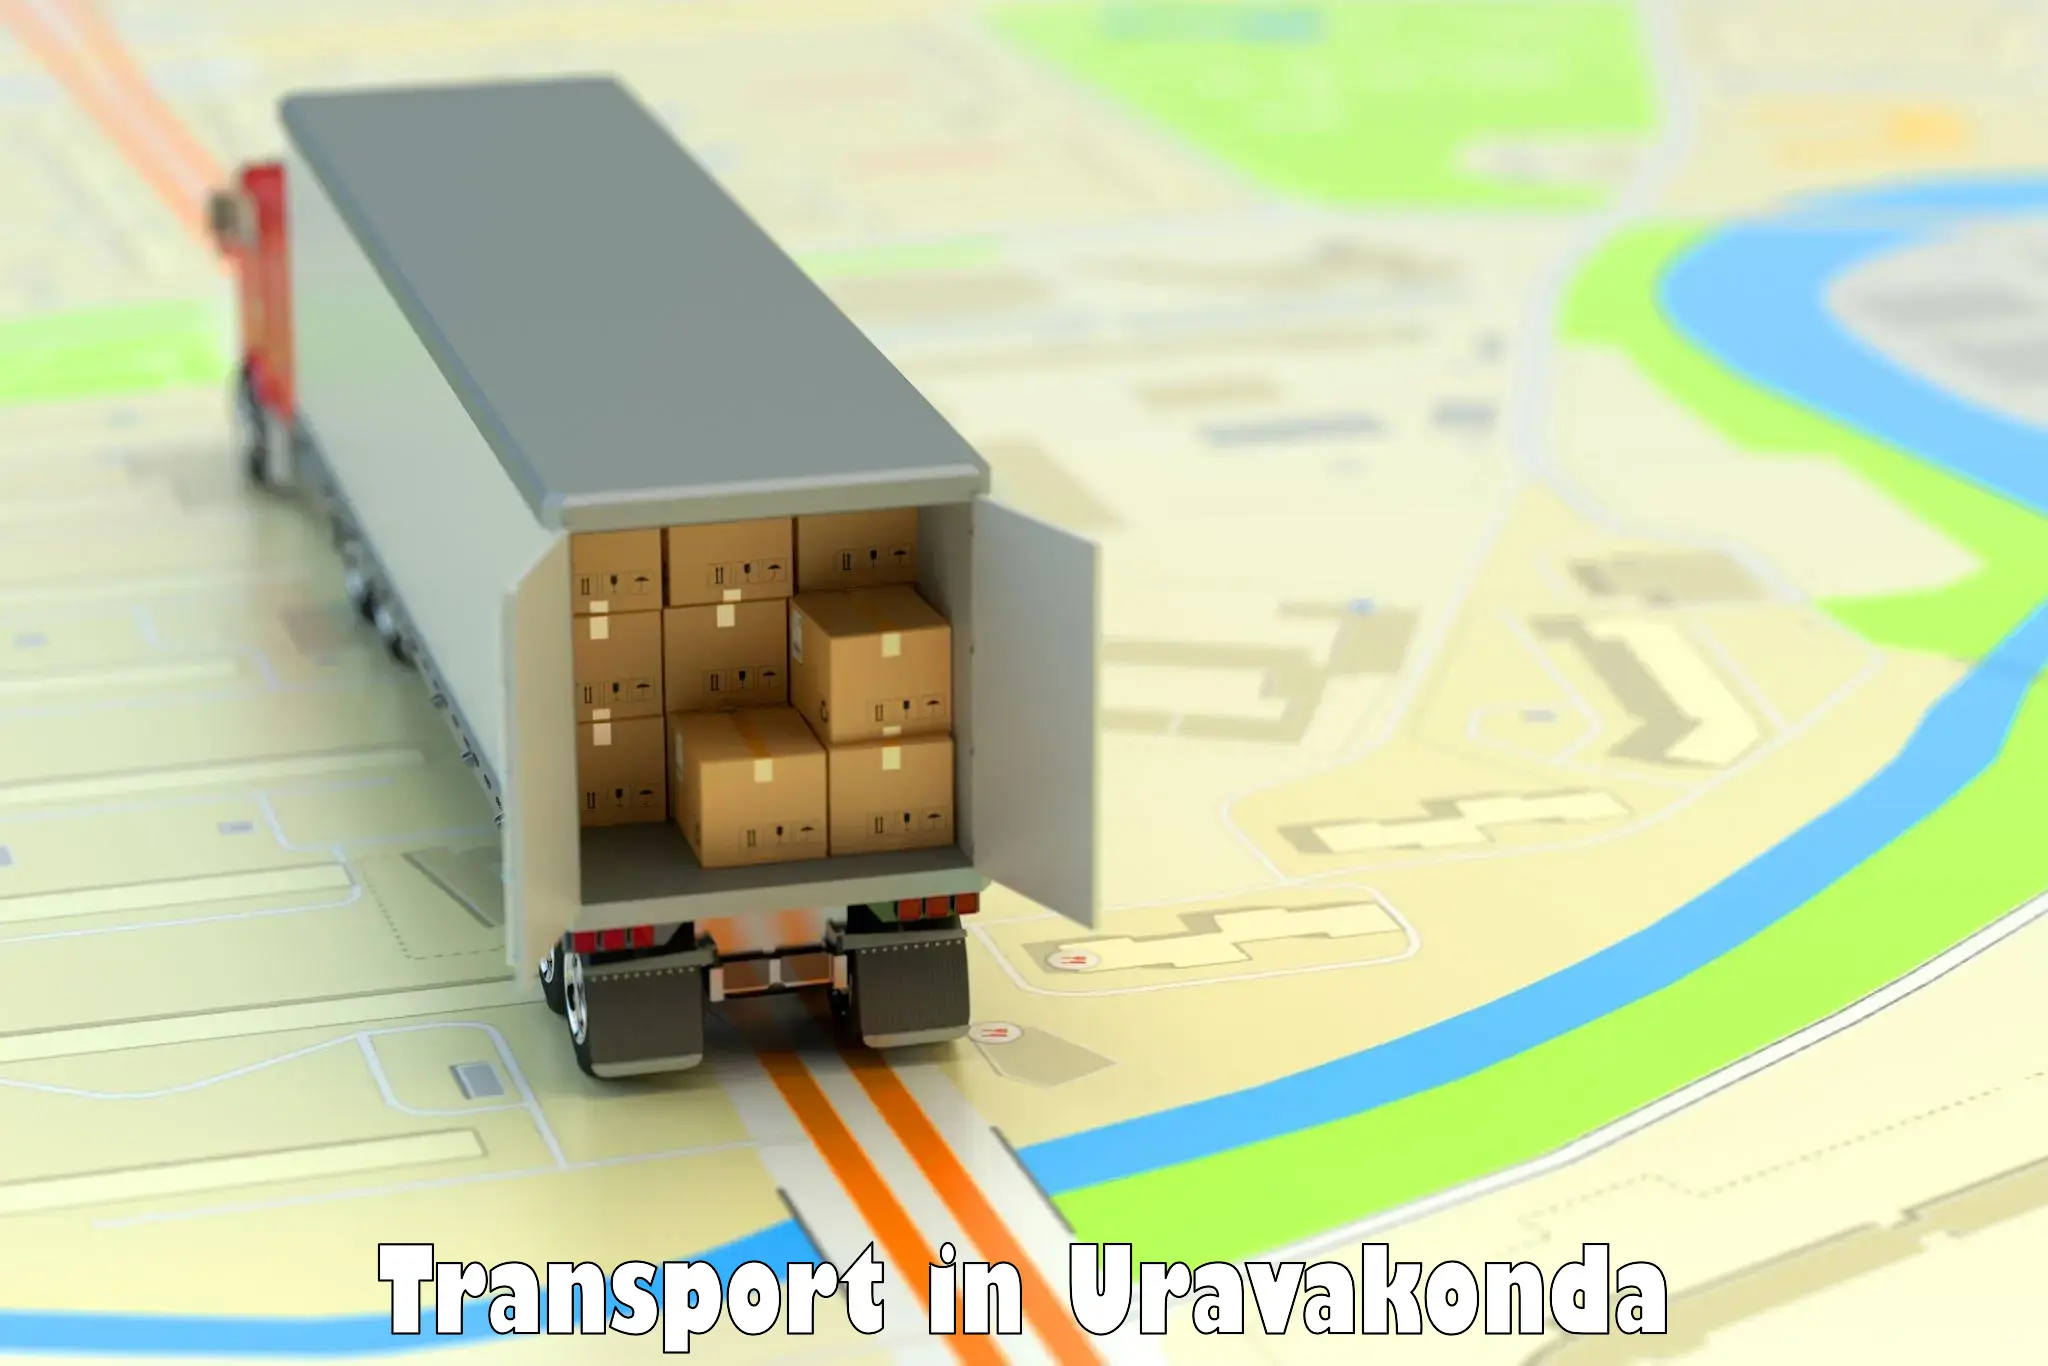 Cargo transport services in Uravakonda